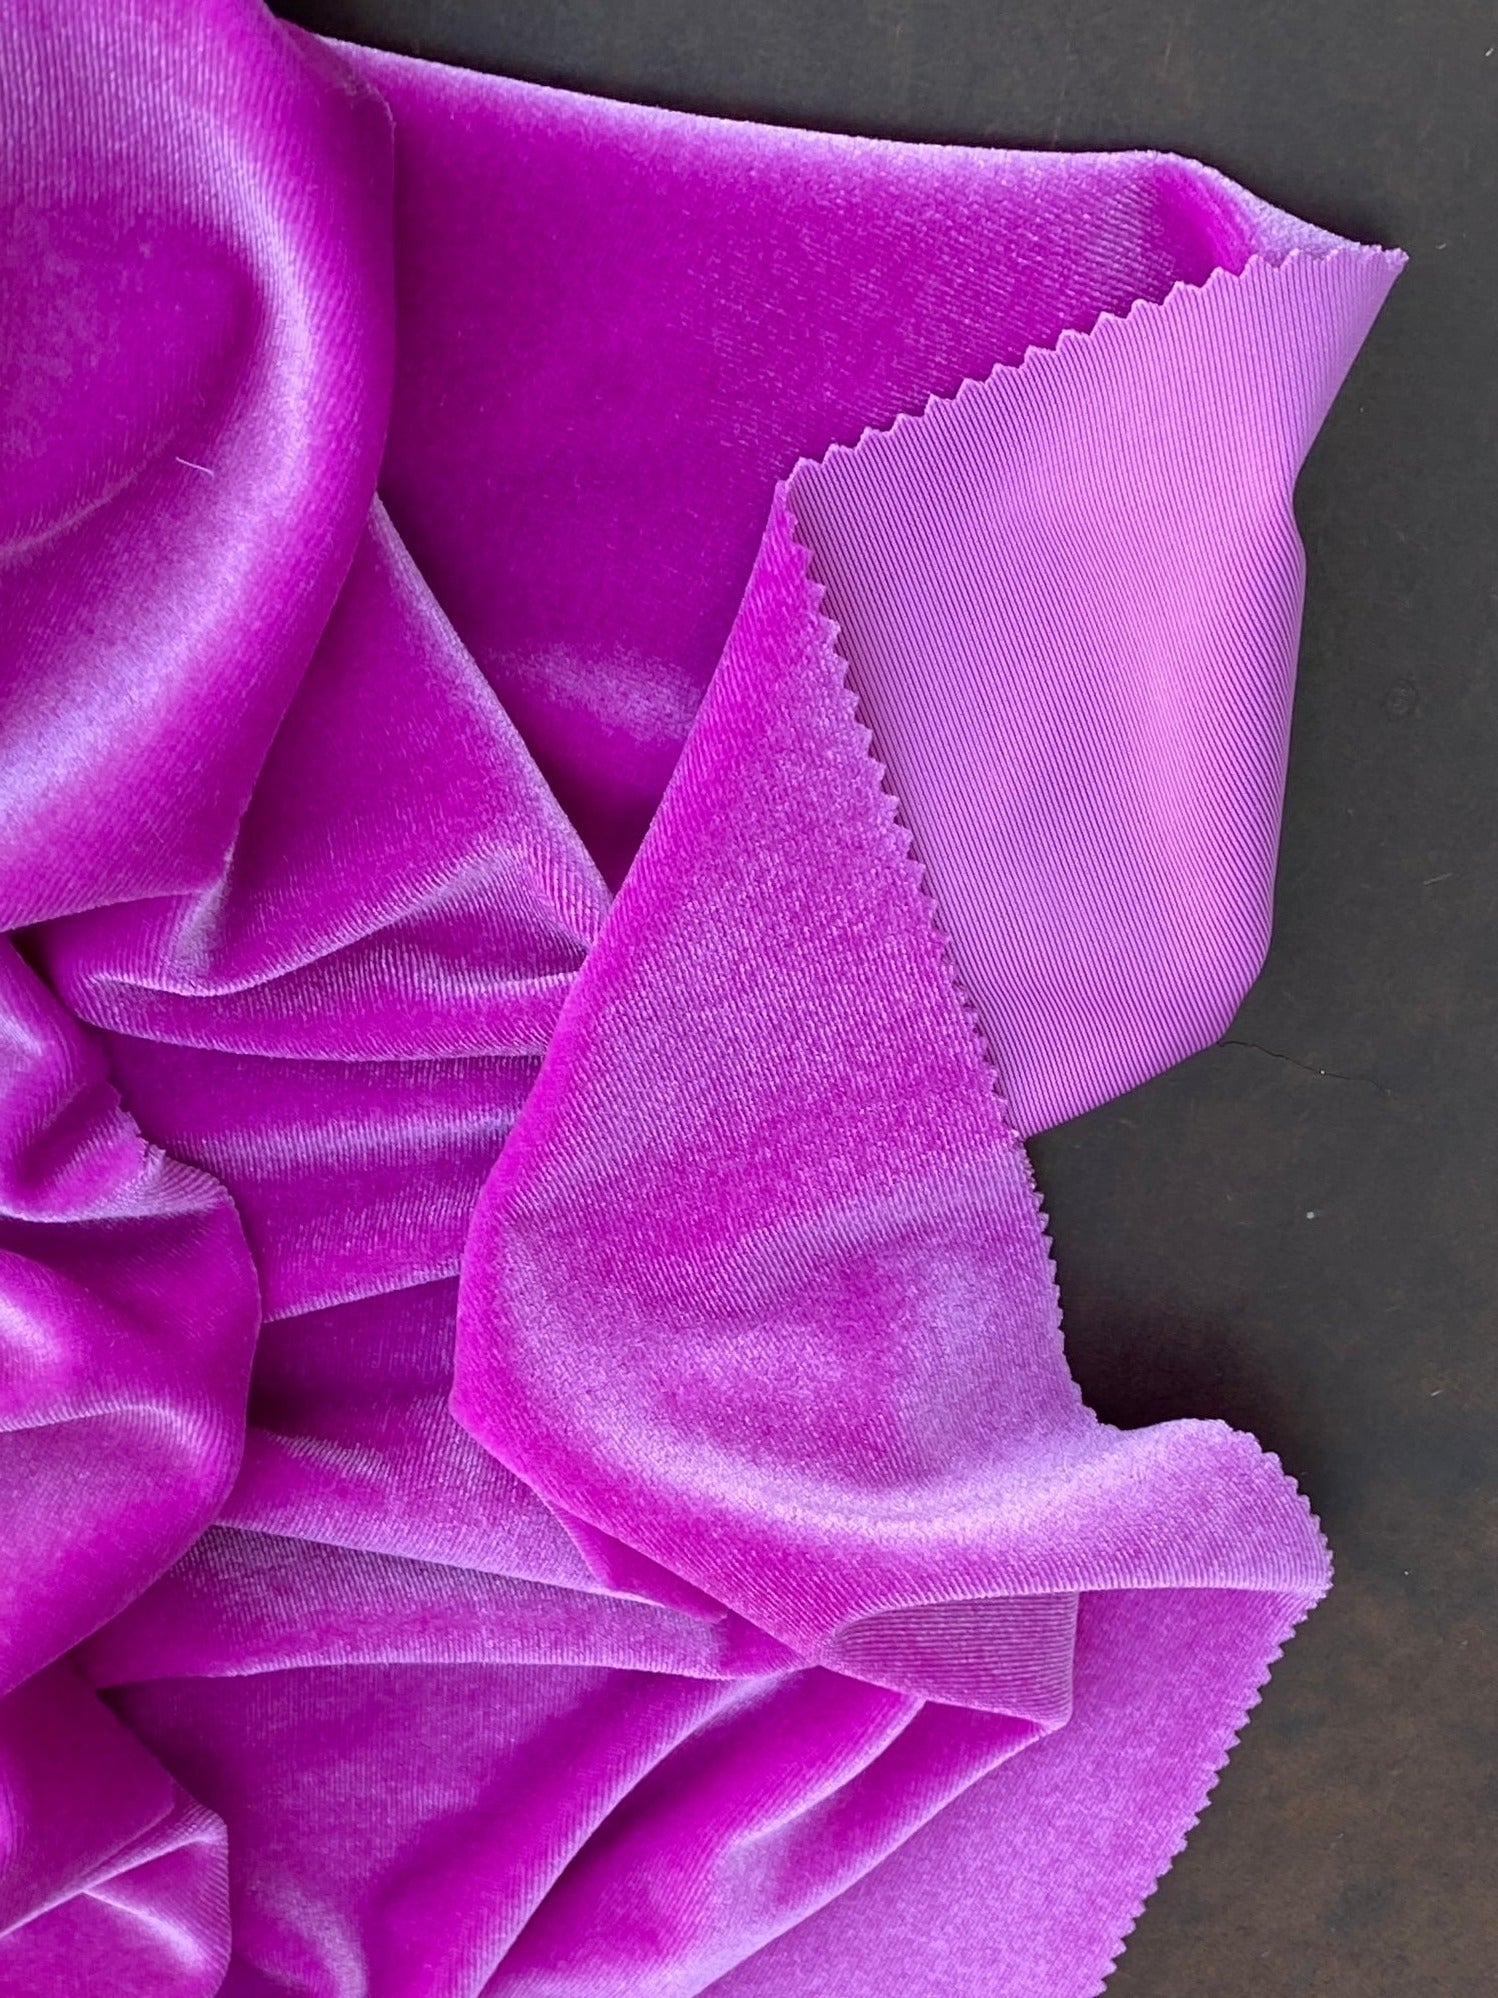 pinkberry velvet, hot pink velvet fabric, fuchsia stretch velvet, hot pink velvet fabric for dress, vevlet for scrunchies, cheap velvet fabric, princess pink velvet, neon pink velvet fabric